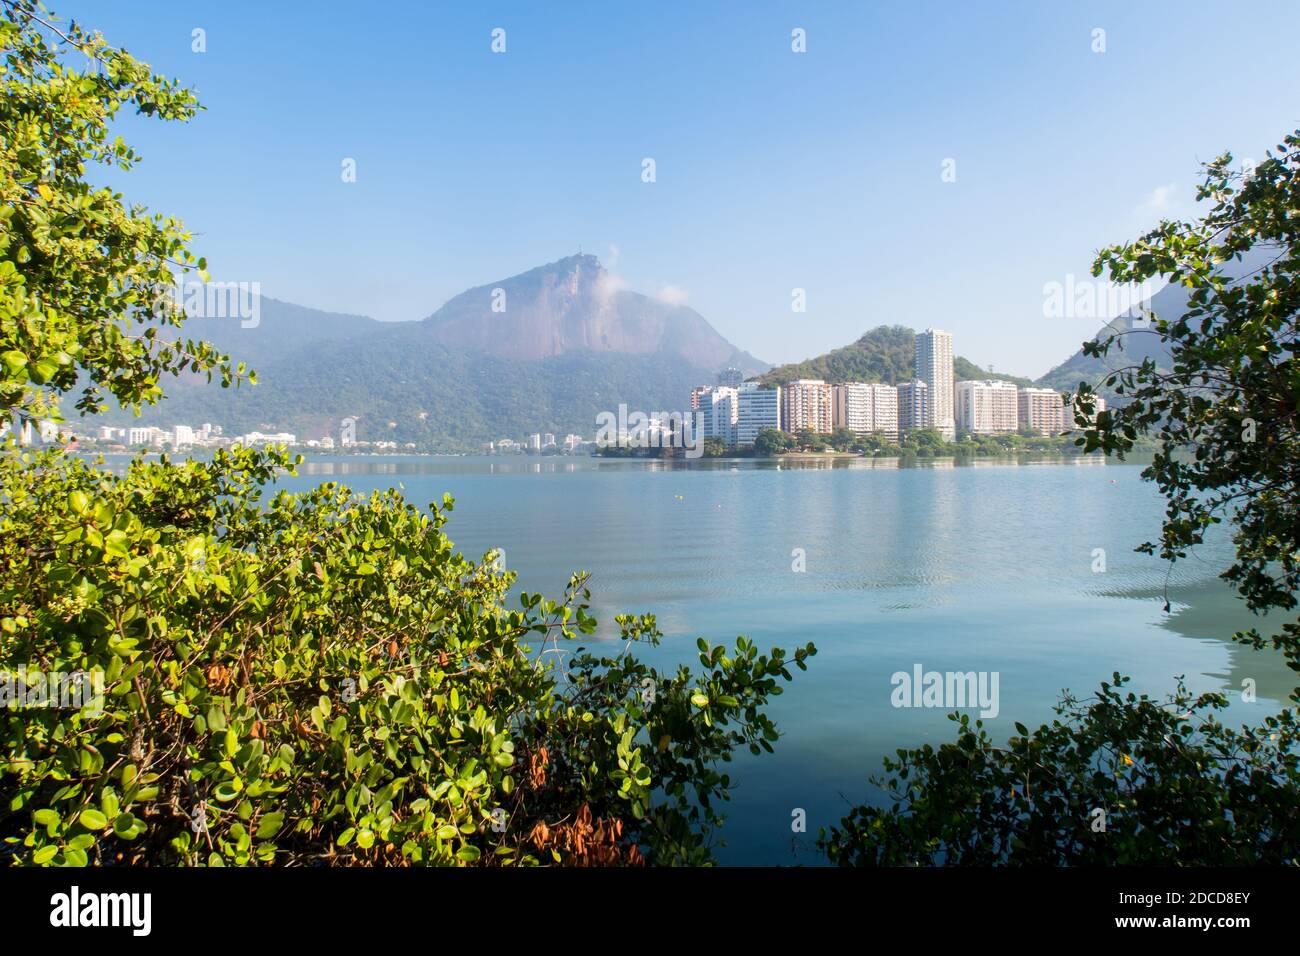 Landscape of Rodrigo de Freitas, Rio de janeiro, Lagoon on a clear day with blue sky Stock Photo